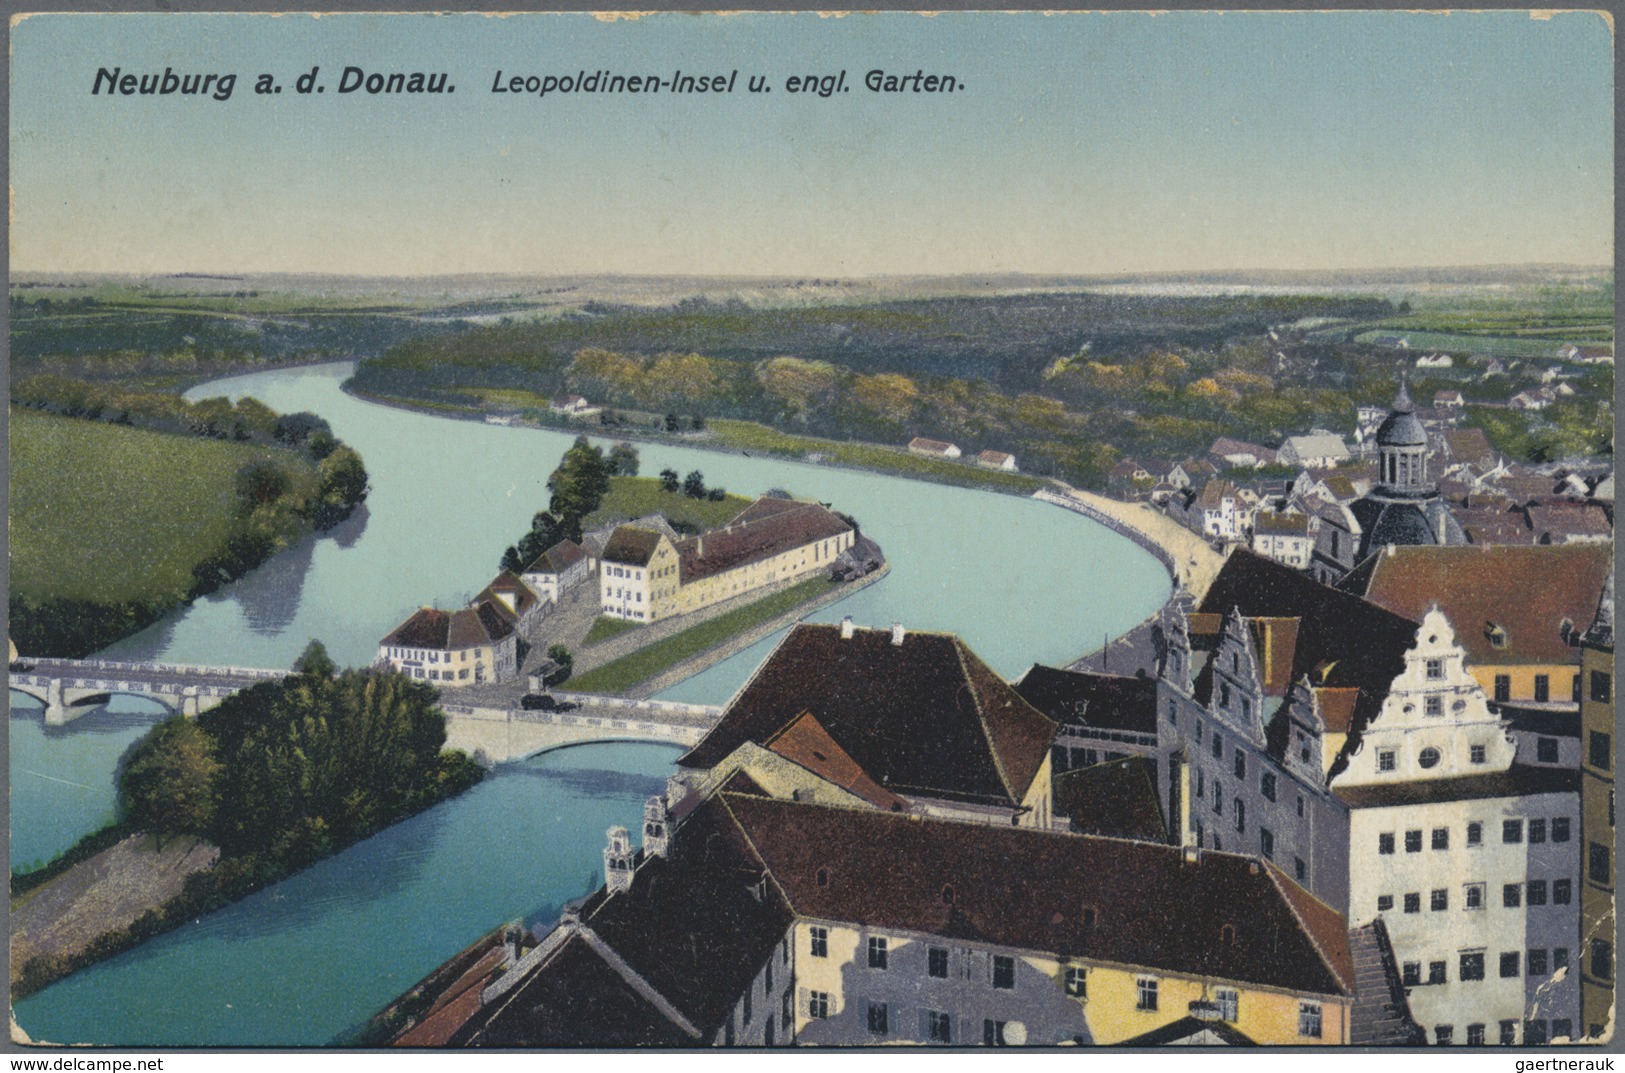 Ansichtskarten: Deutschland: 1900/1940, 2 alte Postkartenalben aus Nachlass, dabei ein Album mit Rei